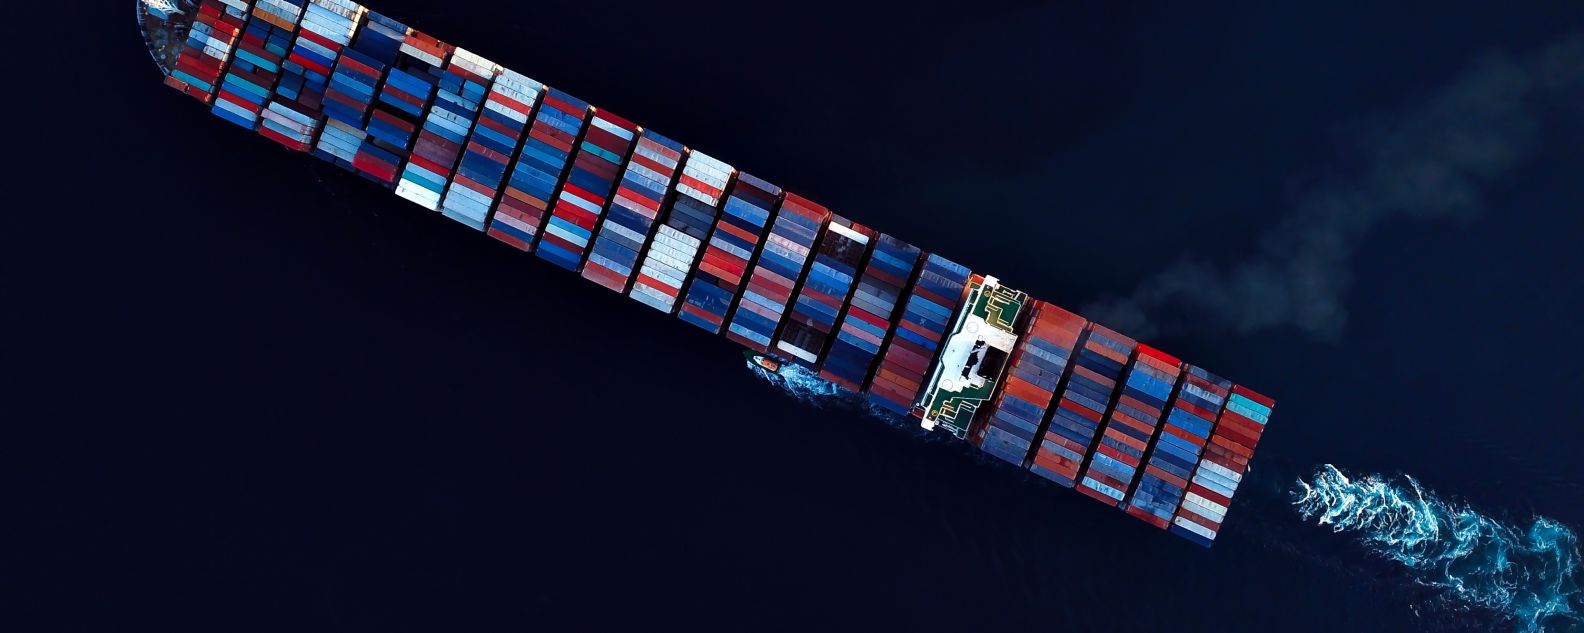 Vista aérea de navio cargueiro no oceano transportando contêineres